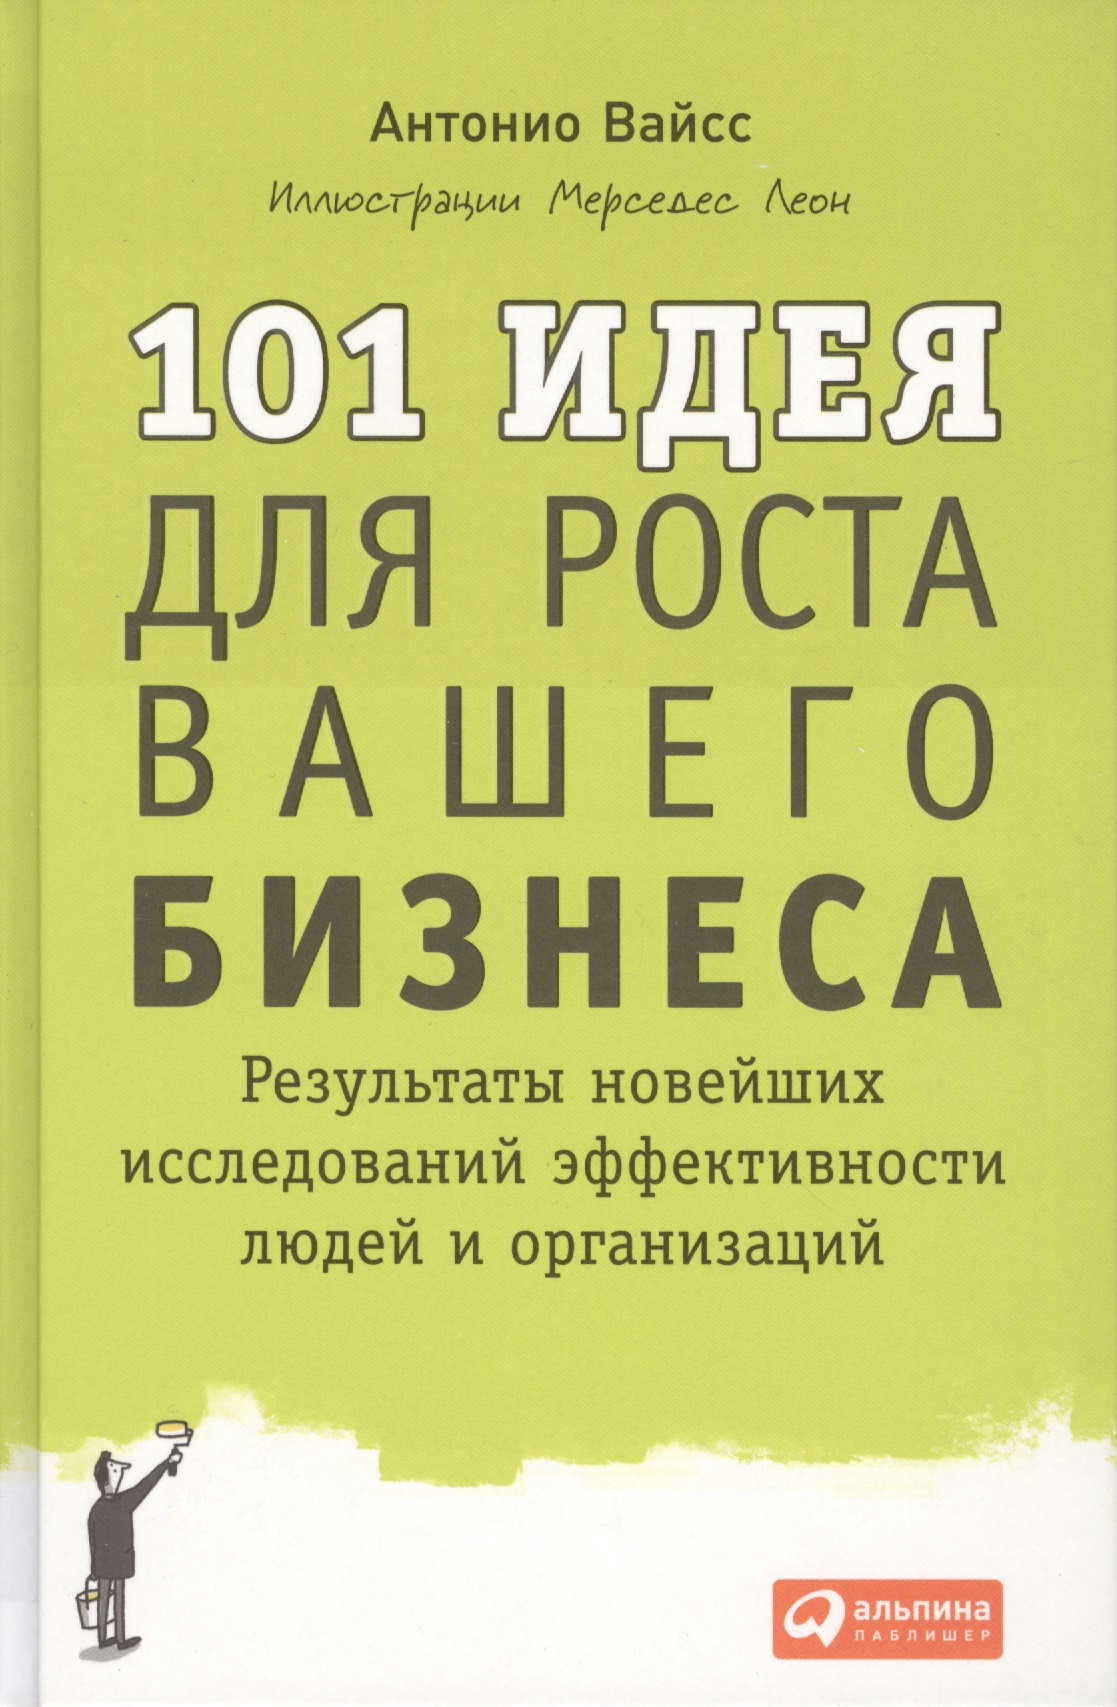 101     :       